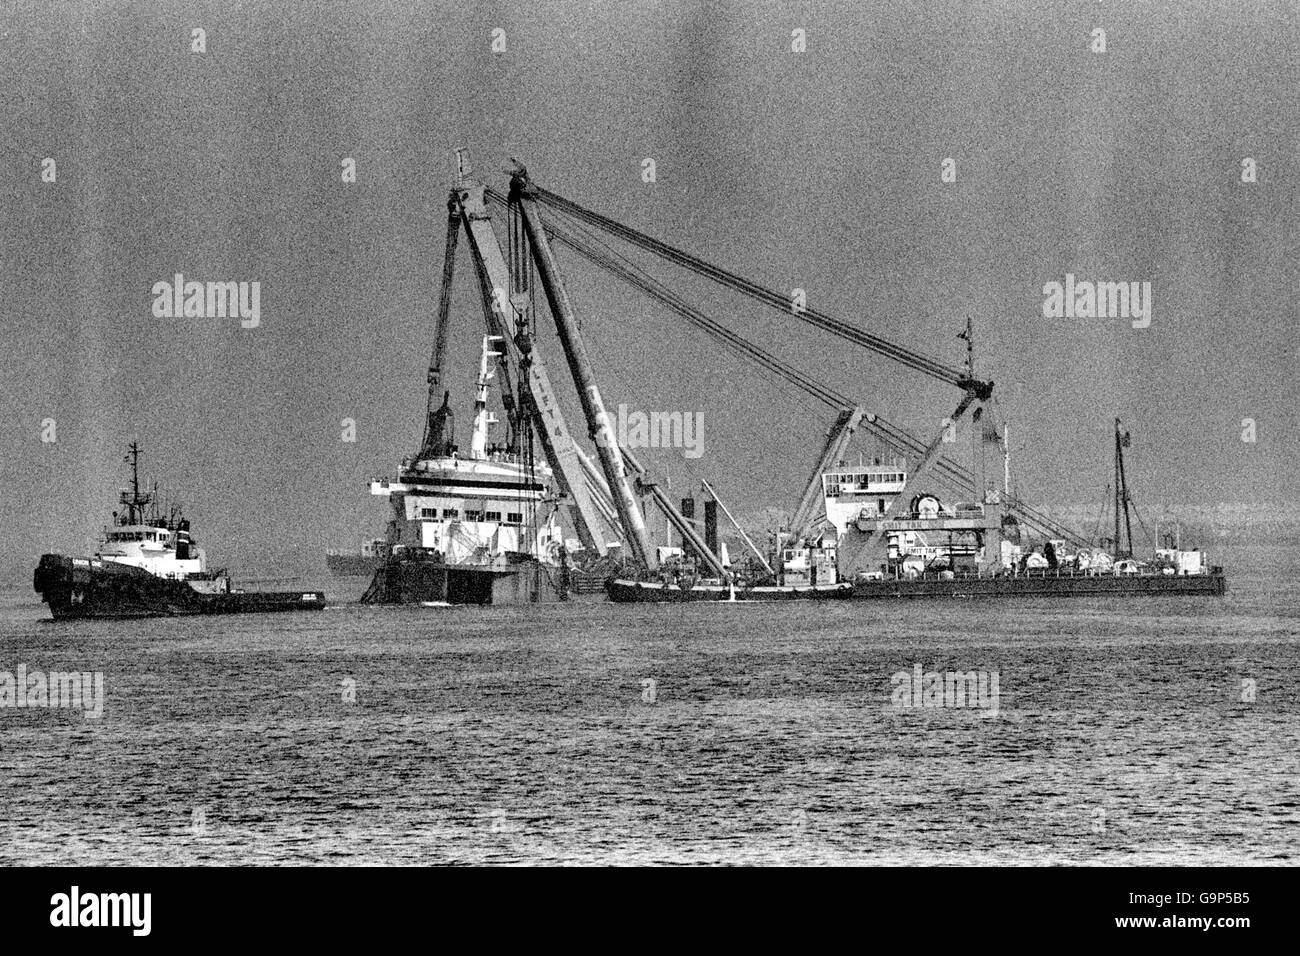 El desastre de Zeebrugge. El coche ferry Herald of Free Enterprise es tirado en el puerto Zeebrugge por remolcadores. Foto de stock